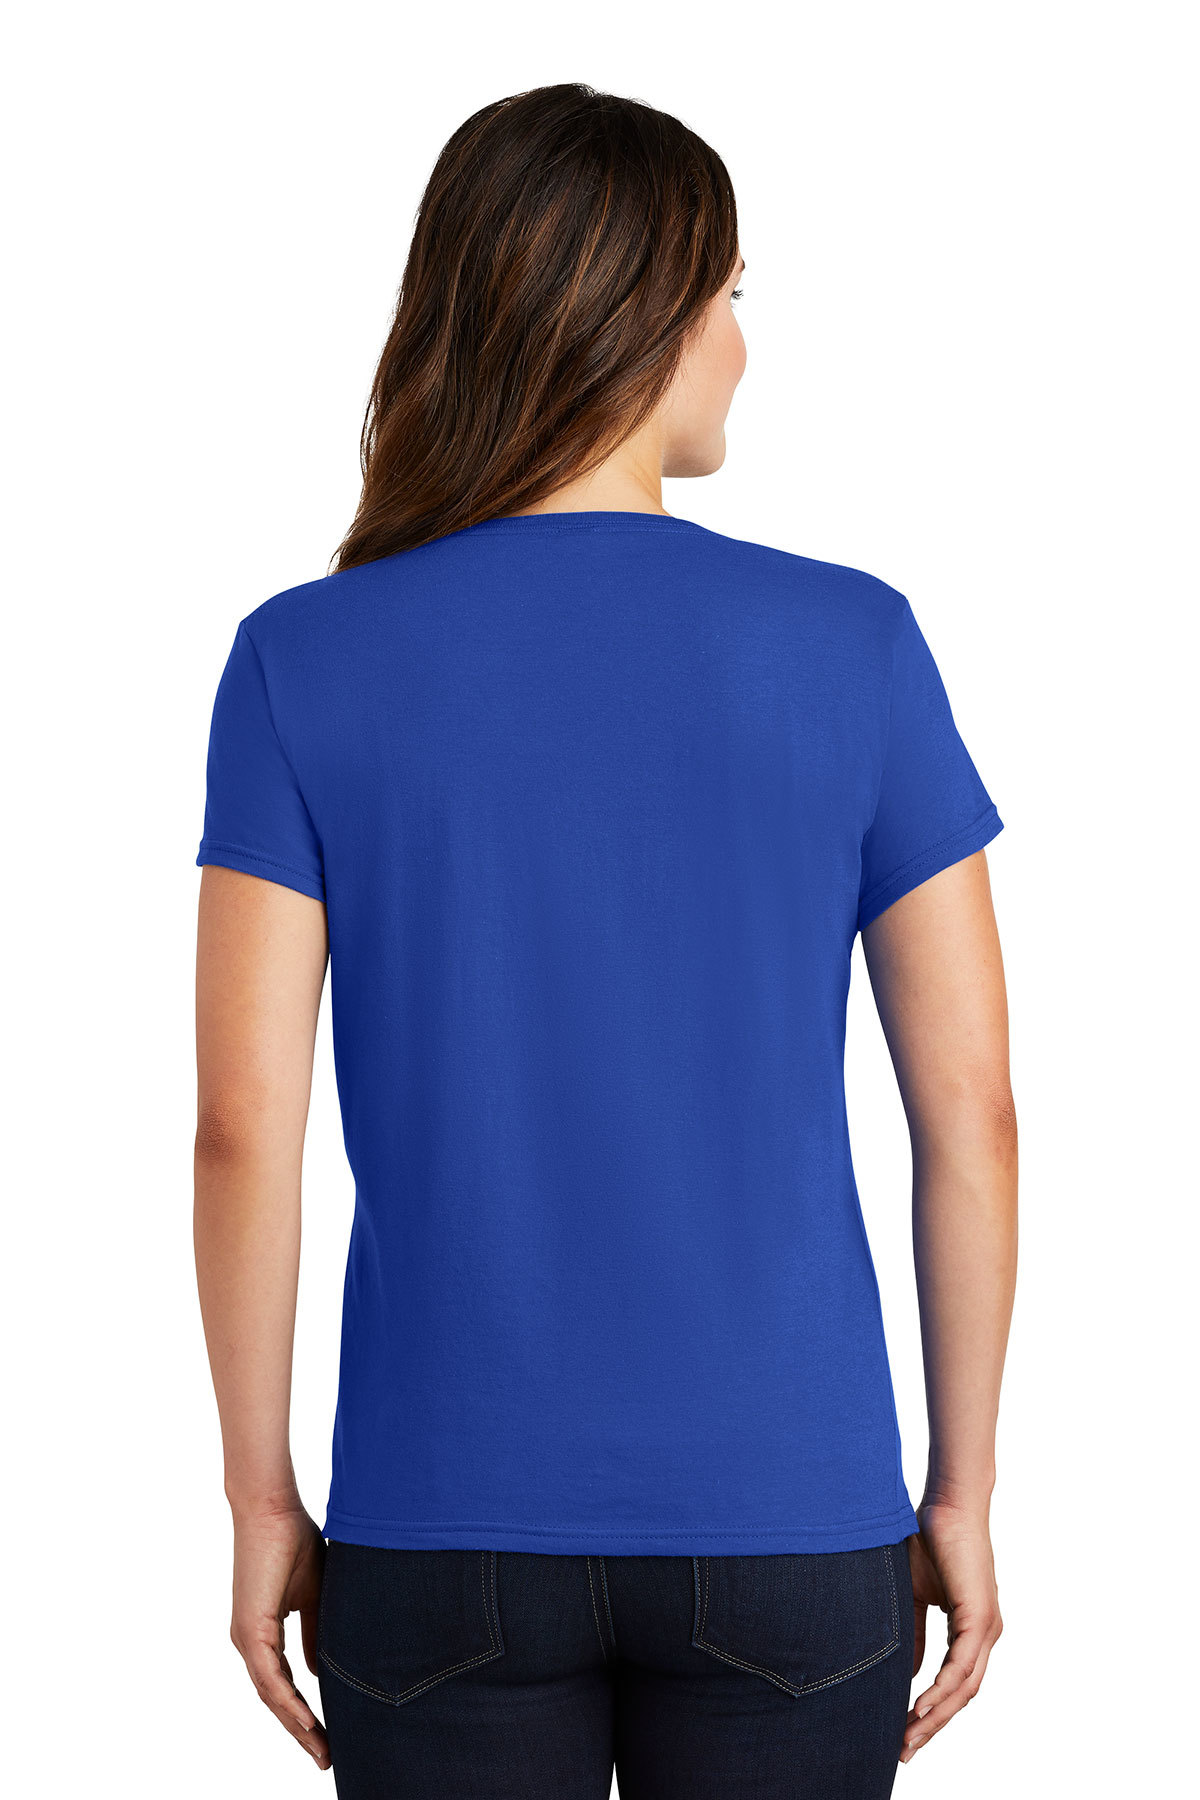 Gildan Ladies 100% Ring Spun Cotton T-Shirt | Product | SanMar